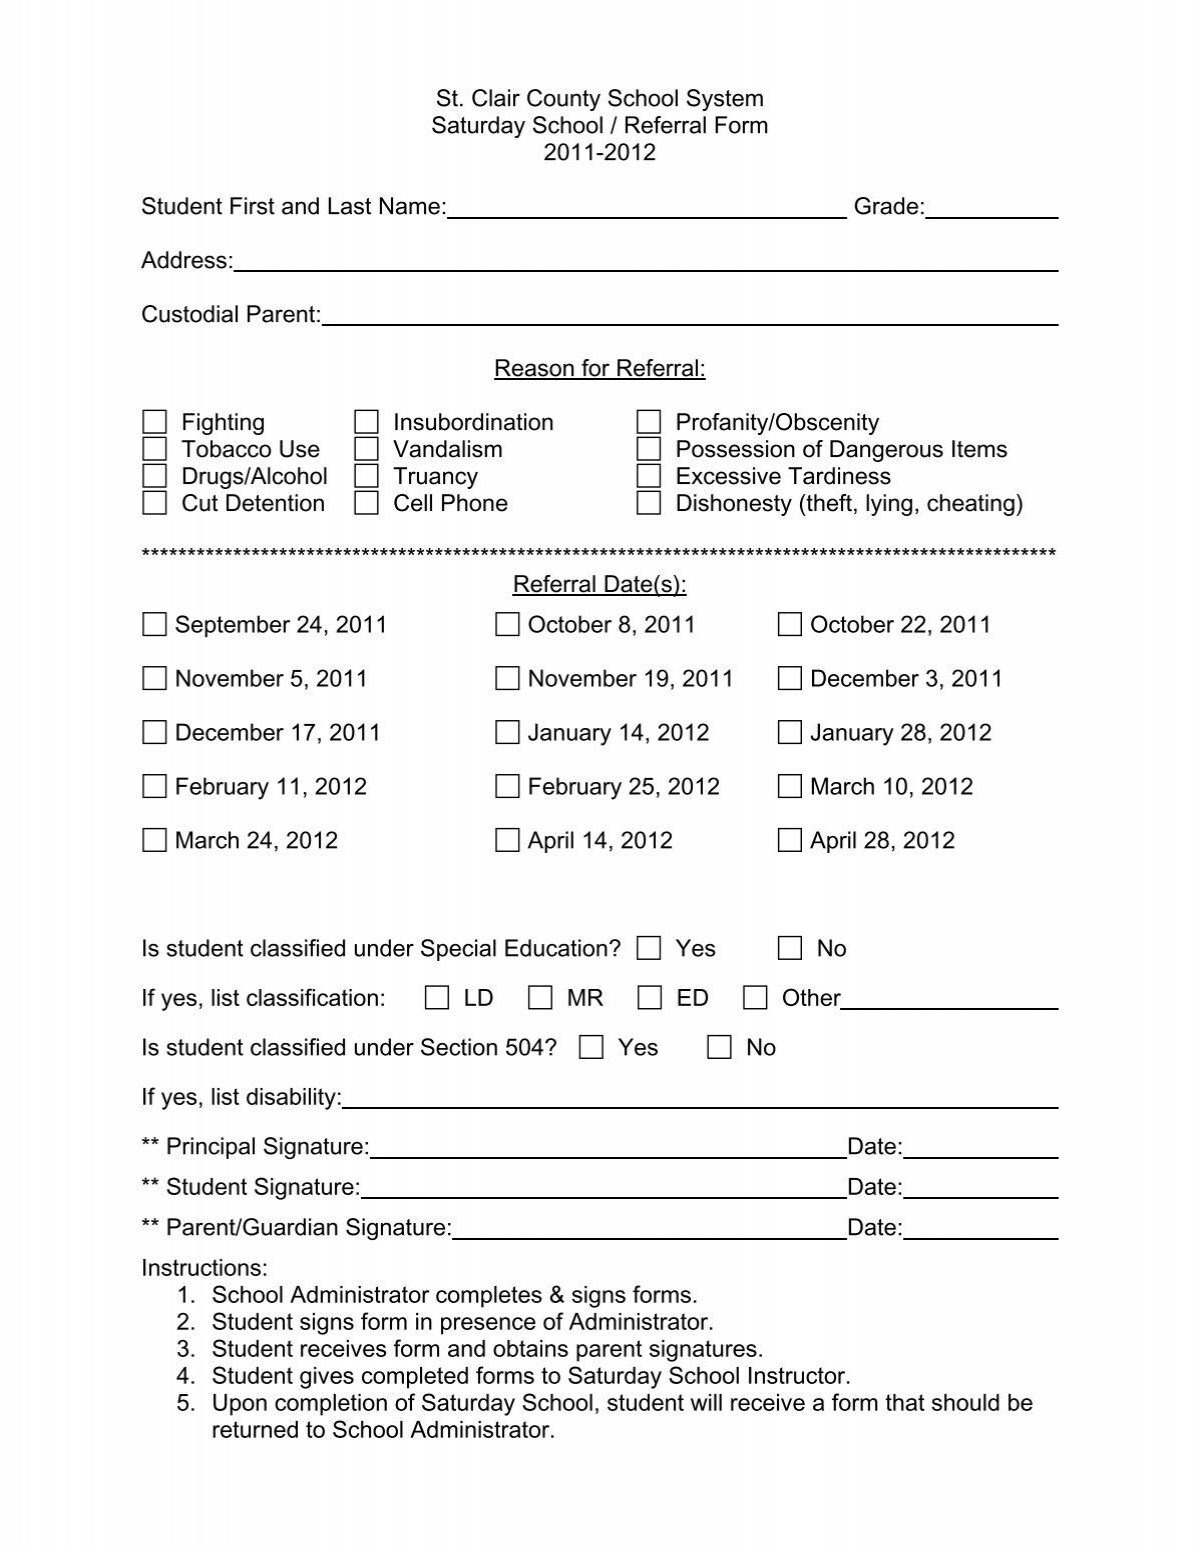 St Clair County School System Saturday School / Referral Form